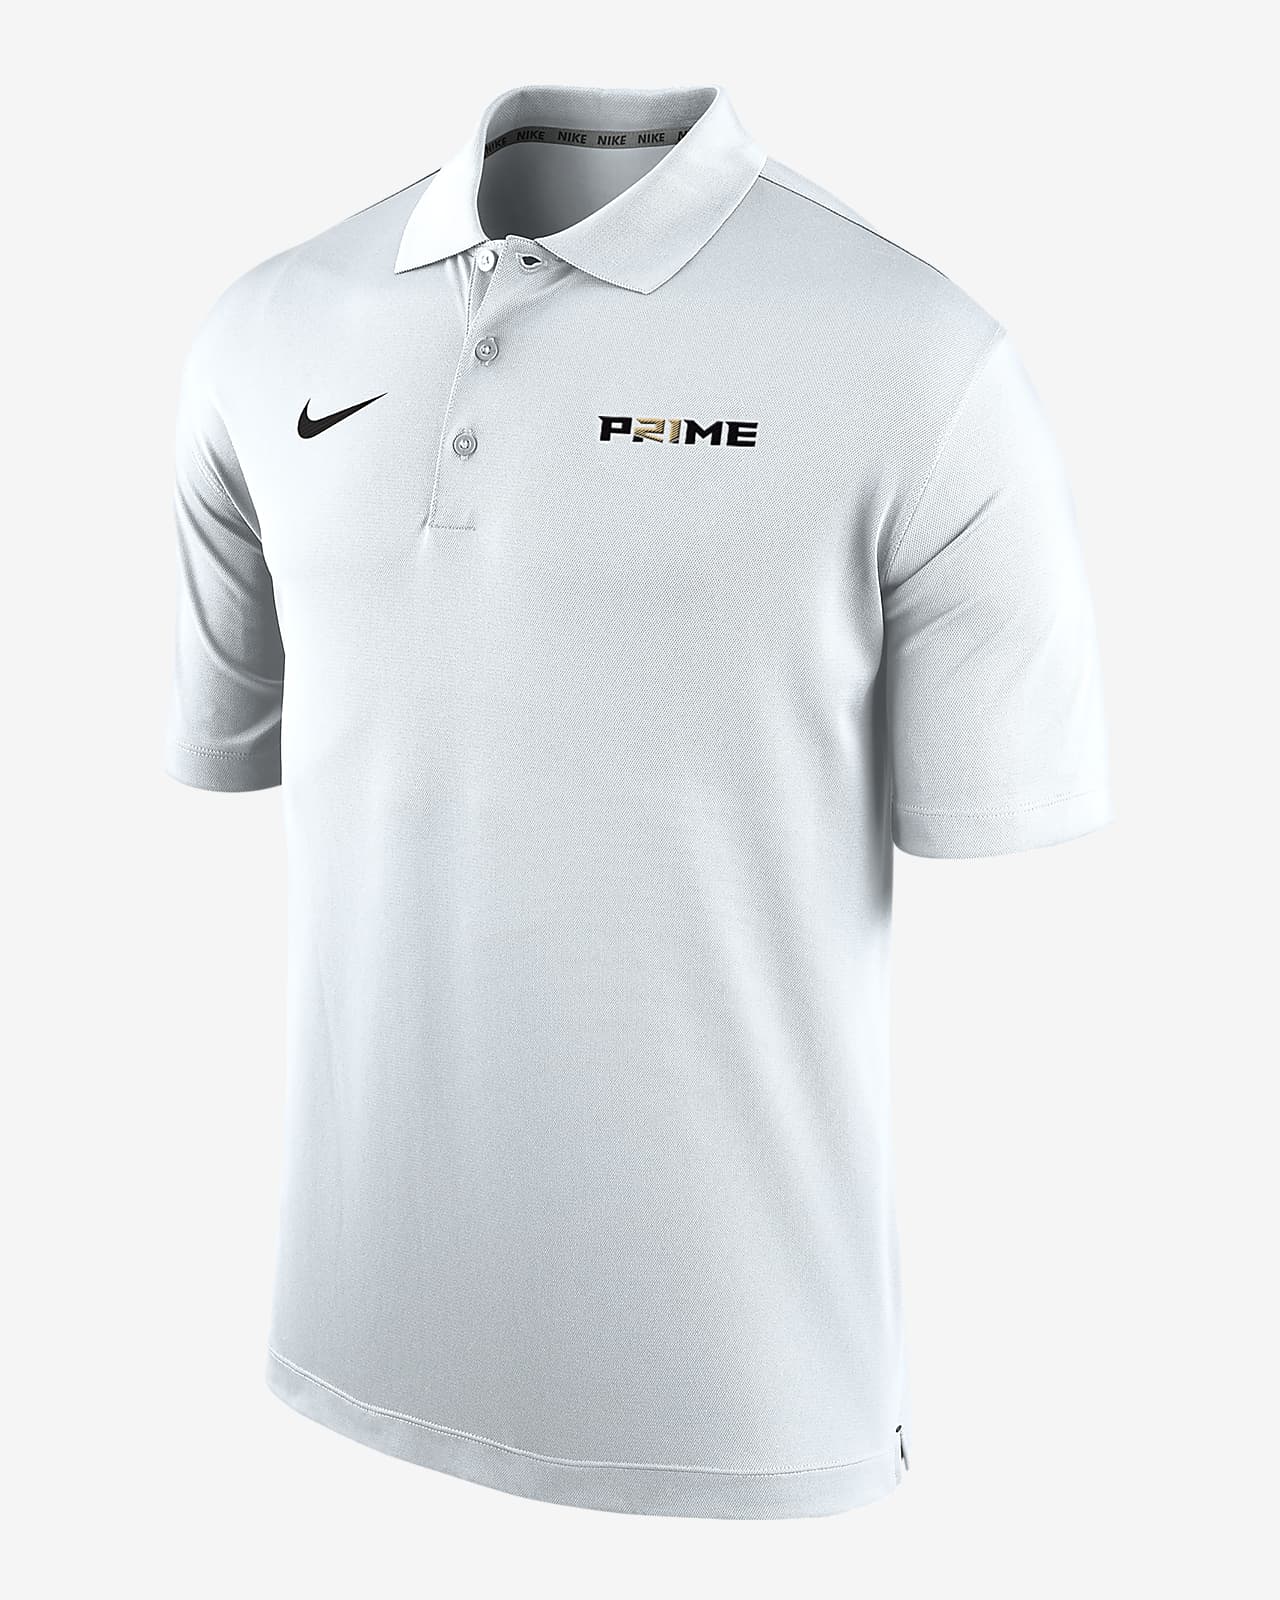 Deion Sanders "P21ME" Men's Nike Dri-FIT Polo Shirt